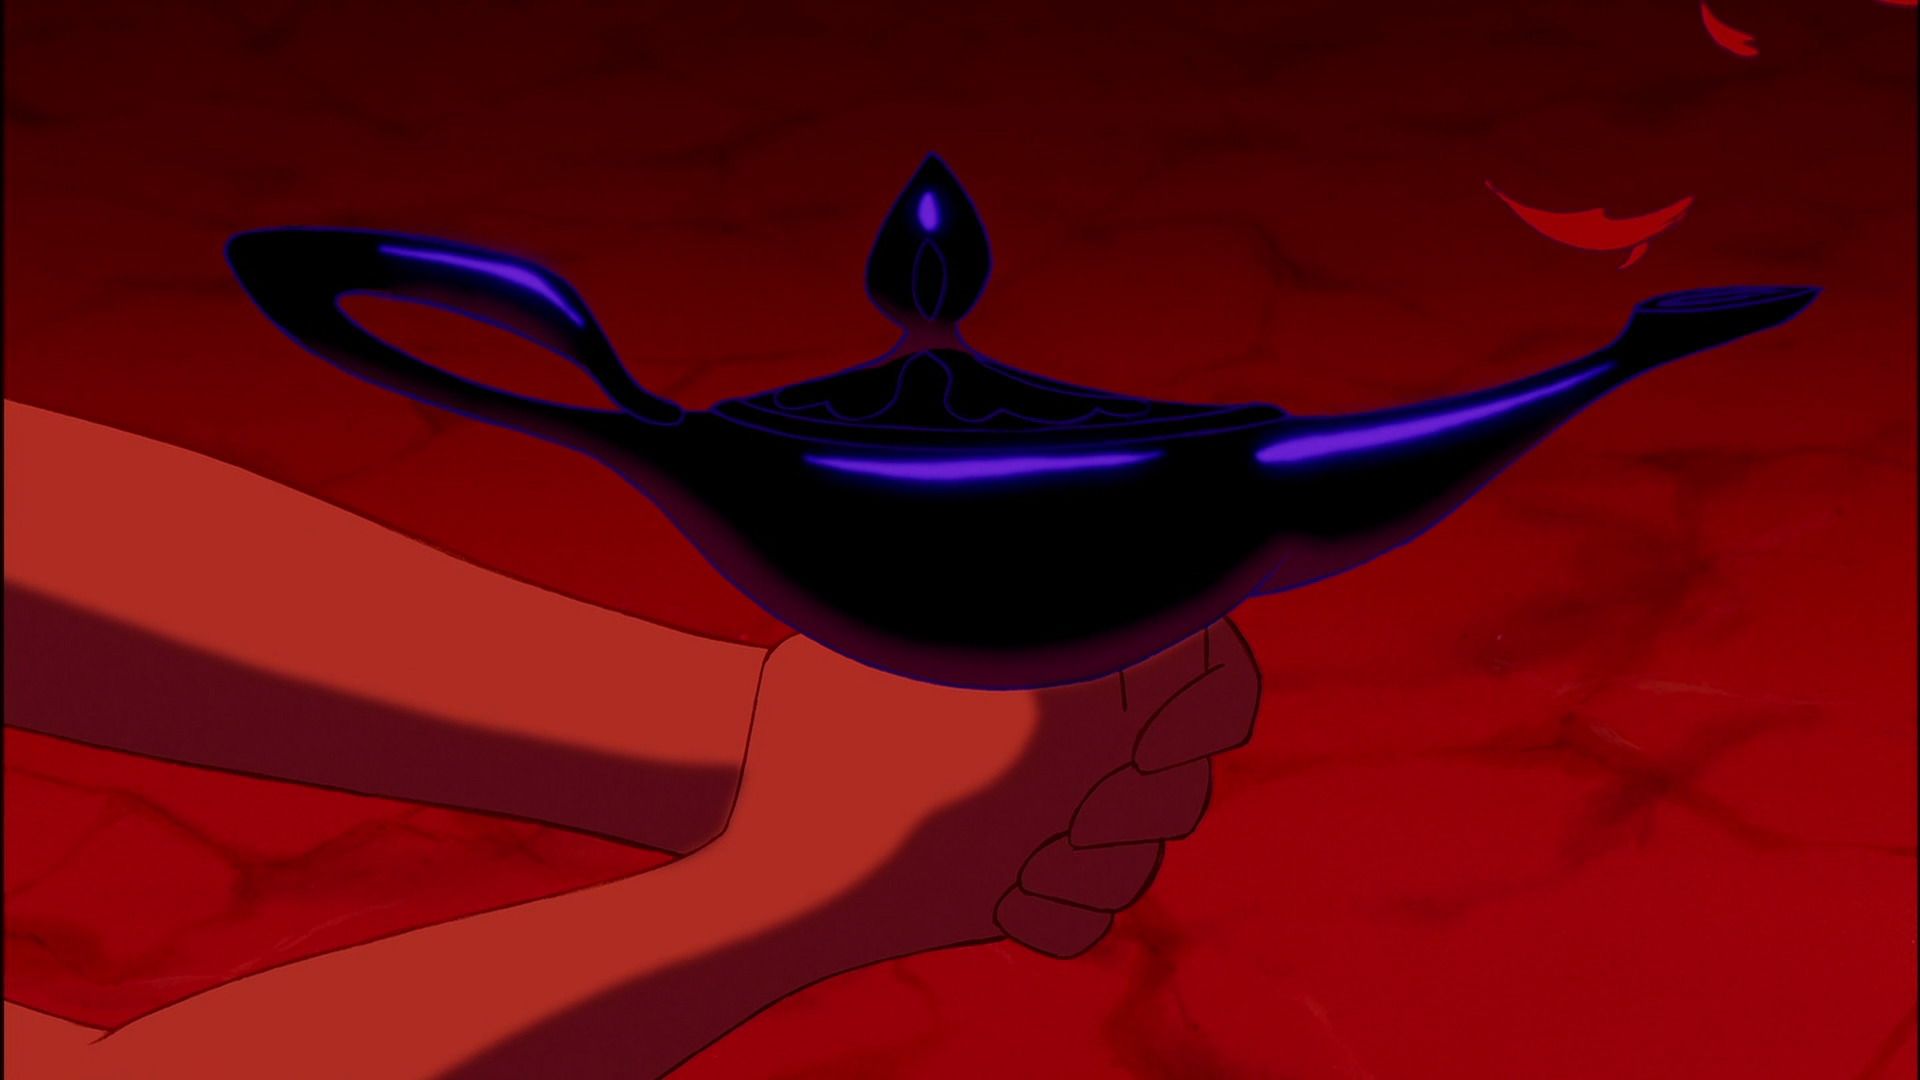 Jafar's Lamp